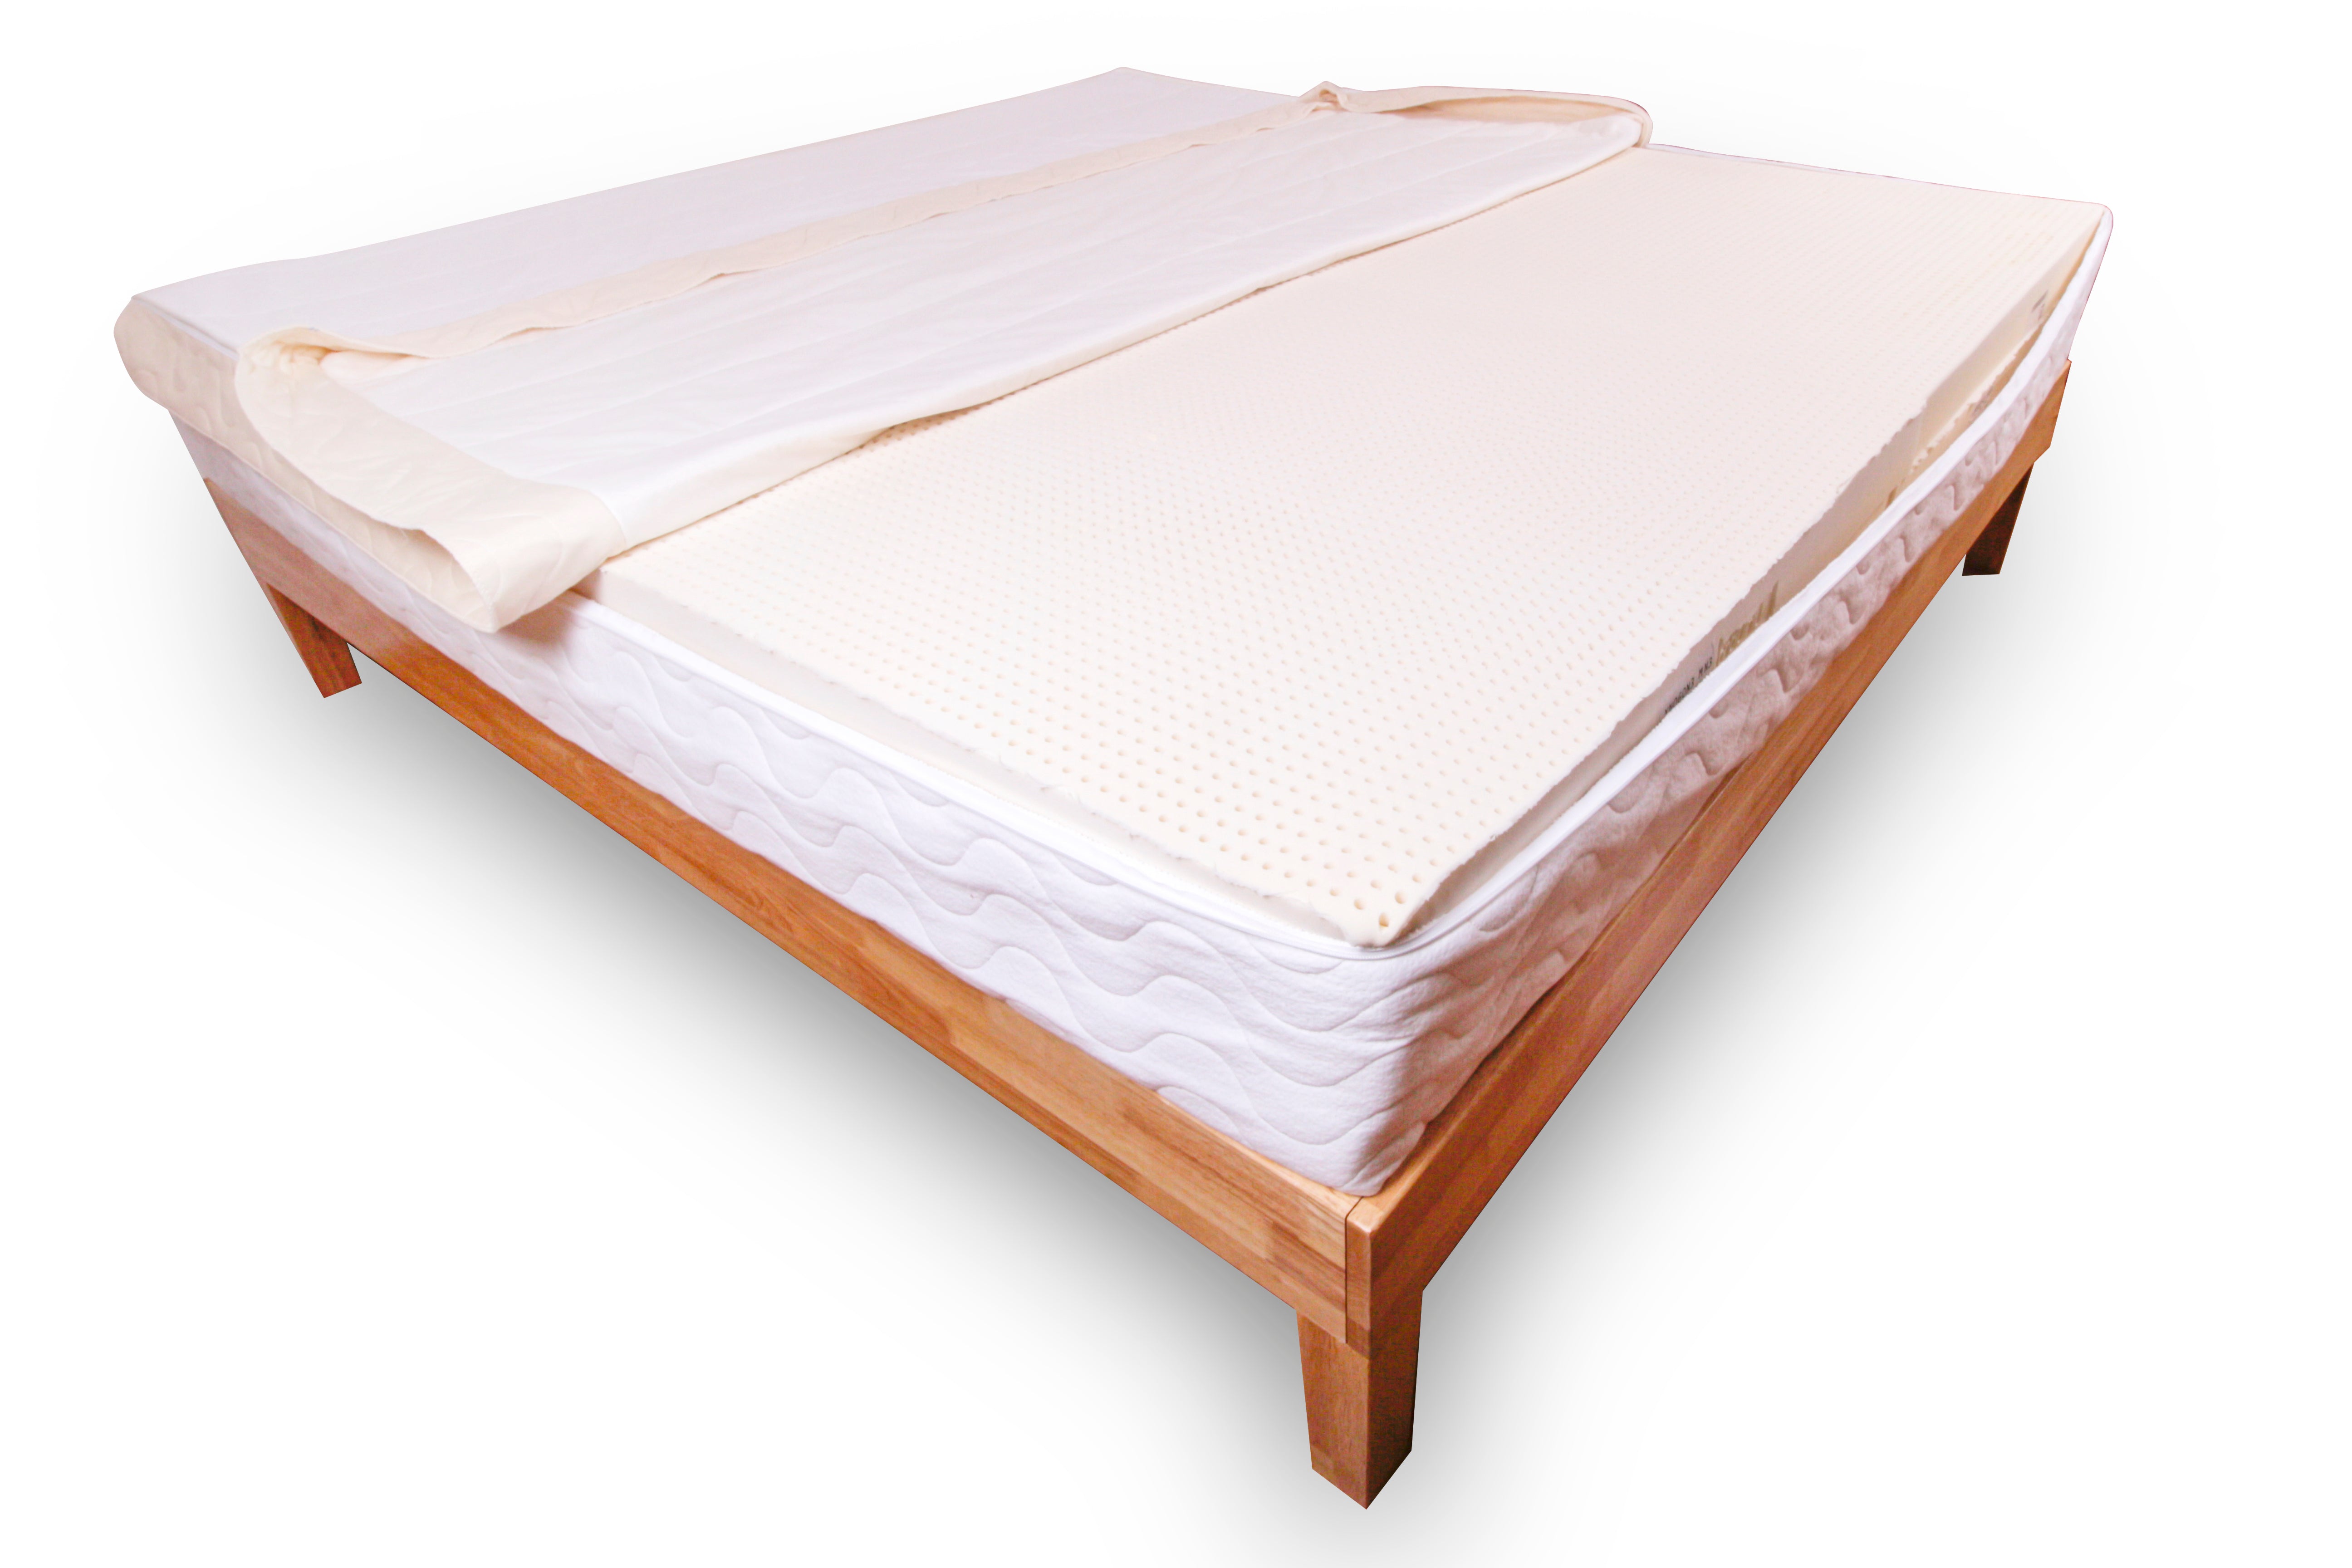 100 sq foot queen mattress